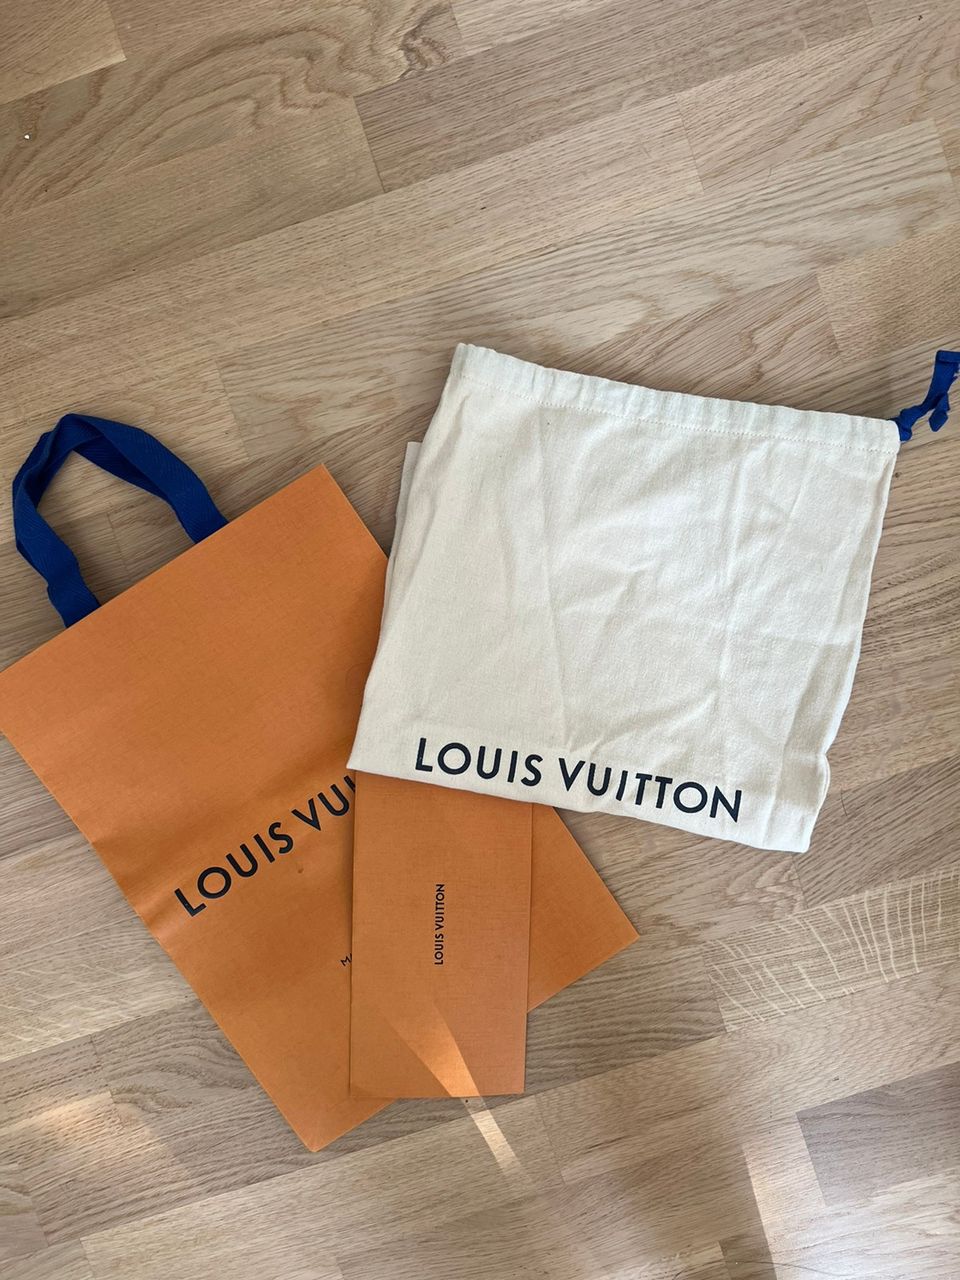 Louis Vuitton dustbag